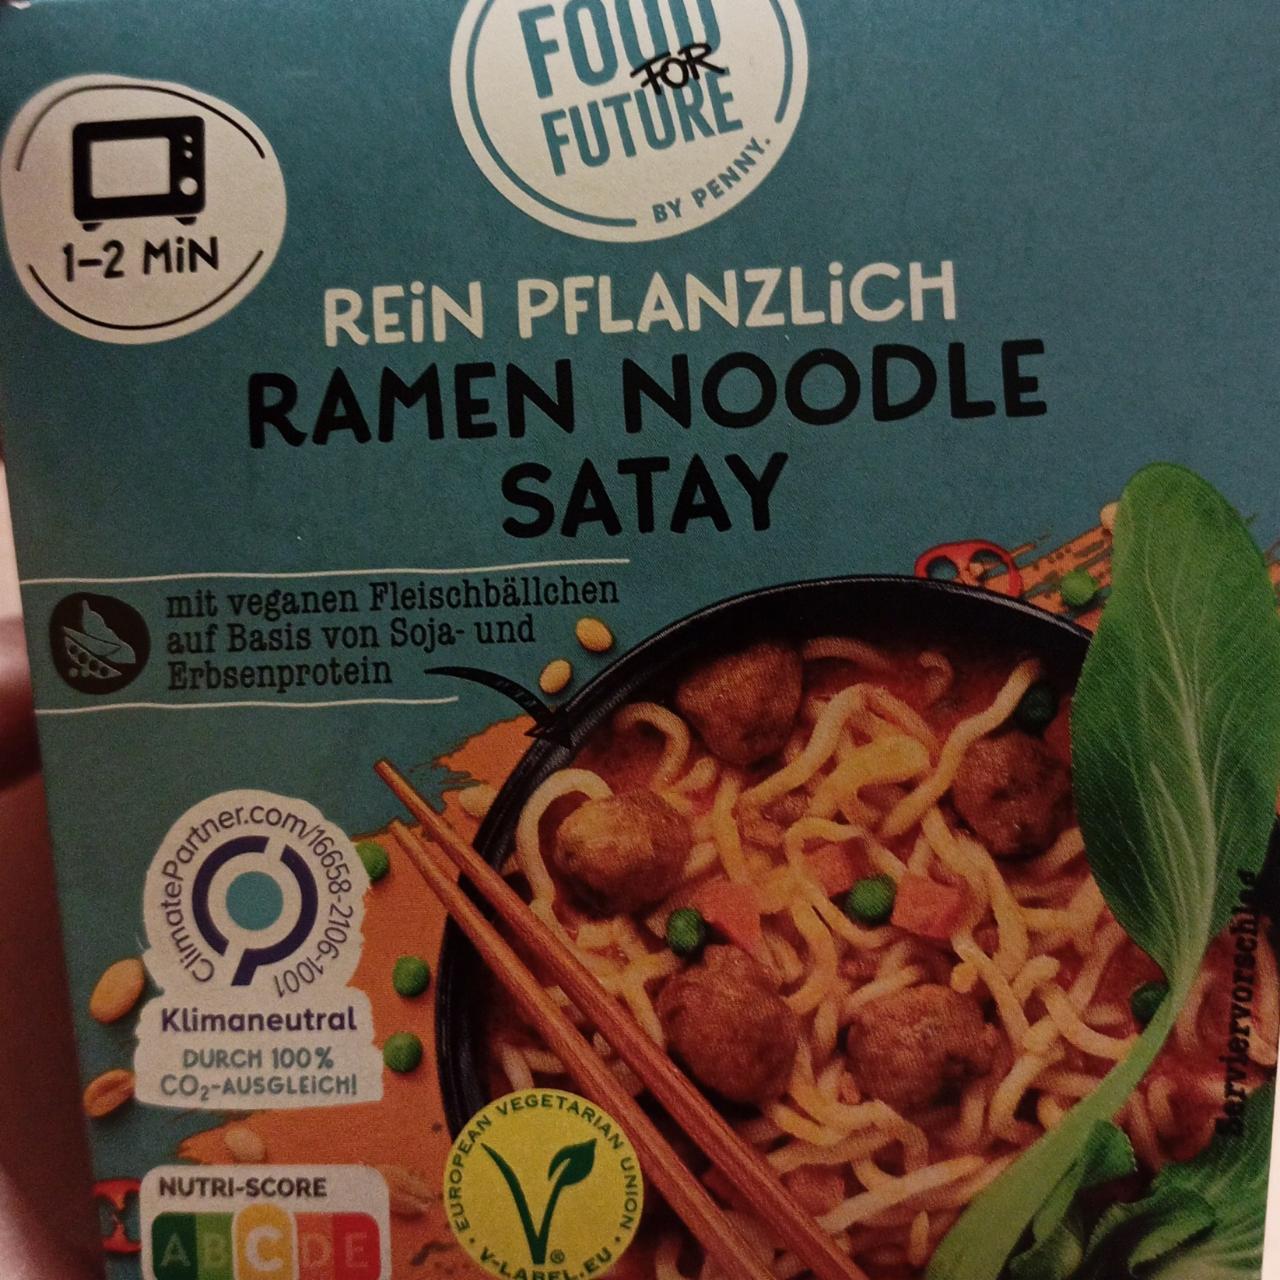 Fotografie - Ramen noodle satay Food for Future